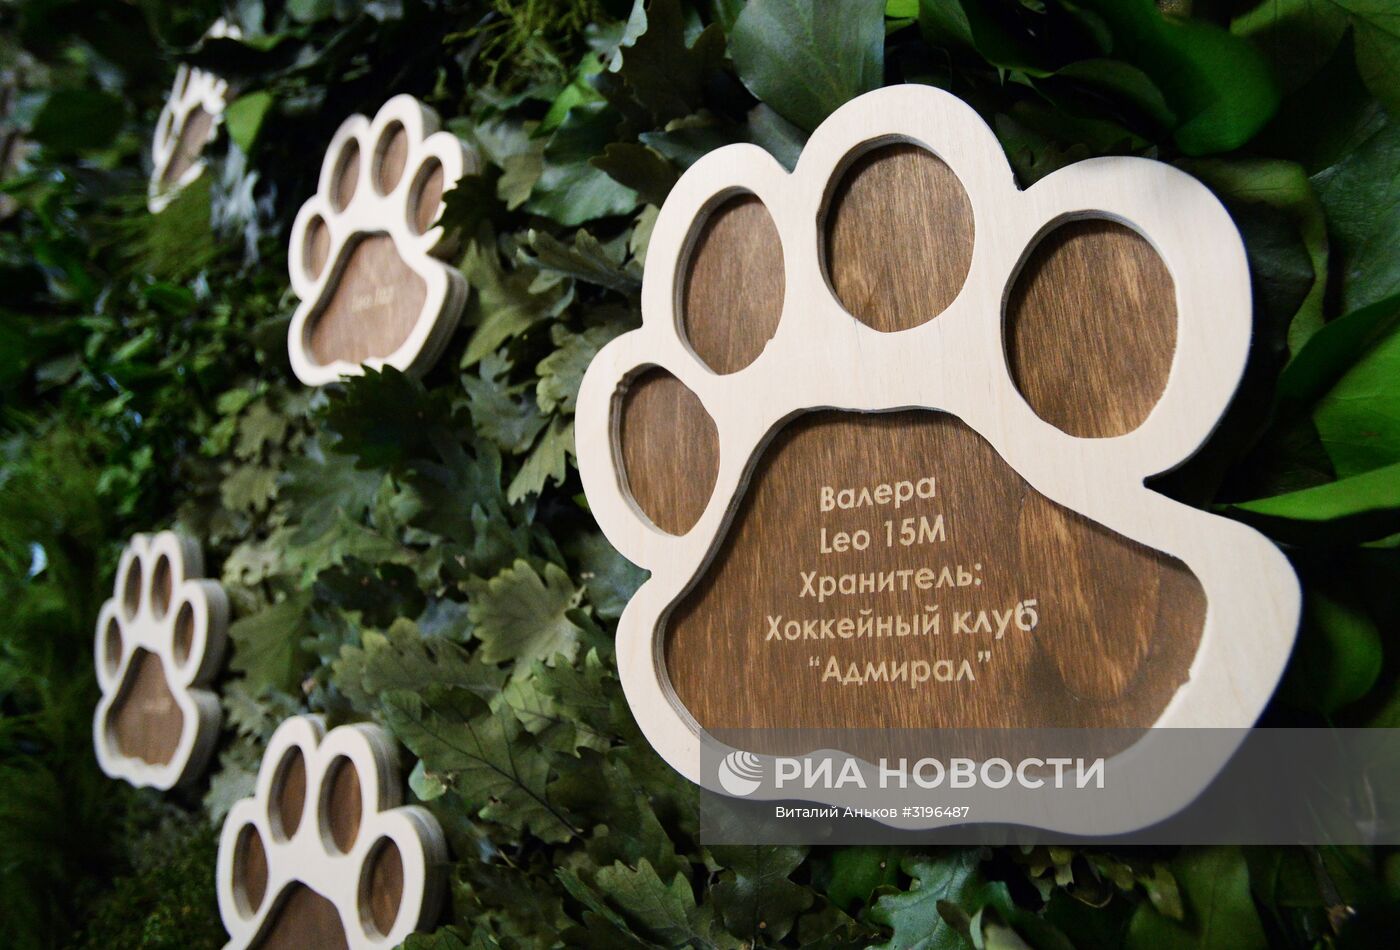 Открытие центральной усадьбы "Земля леопарда" в Приморском крае